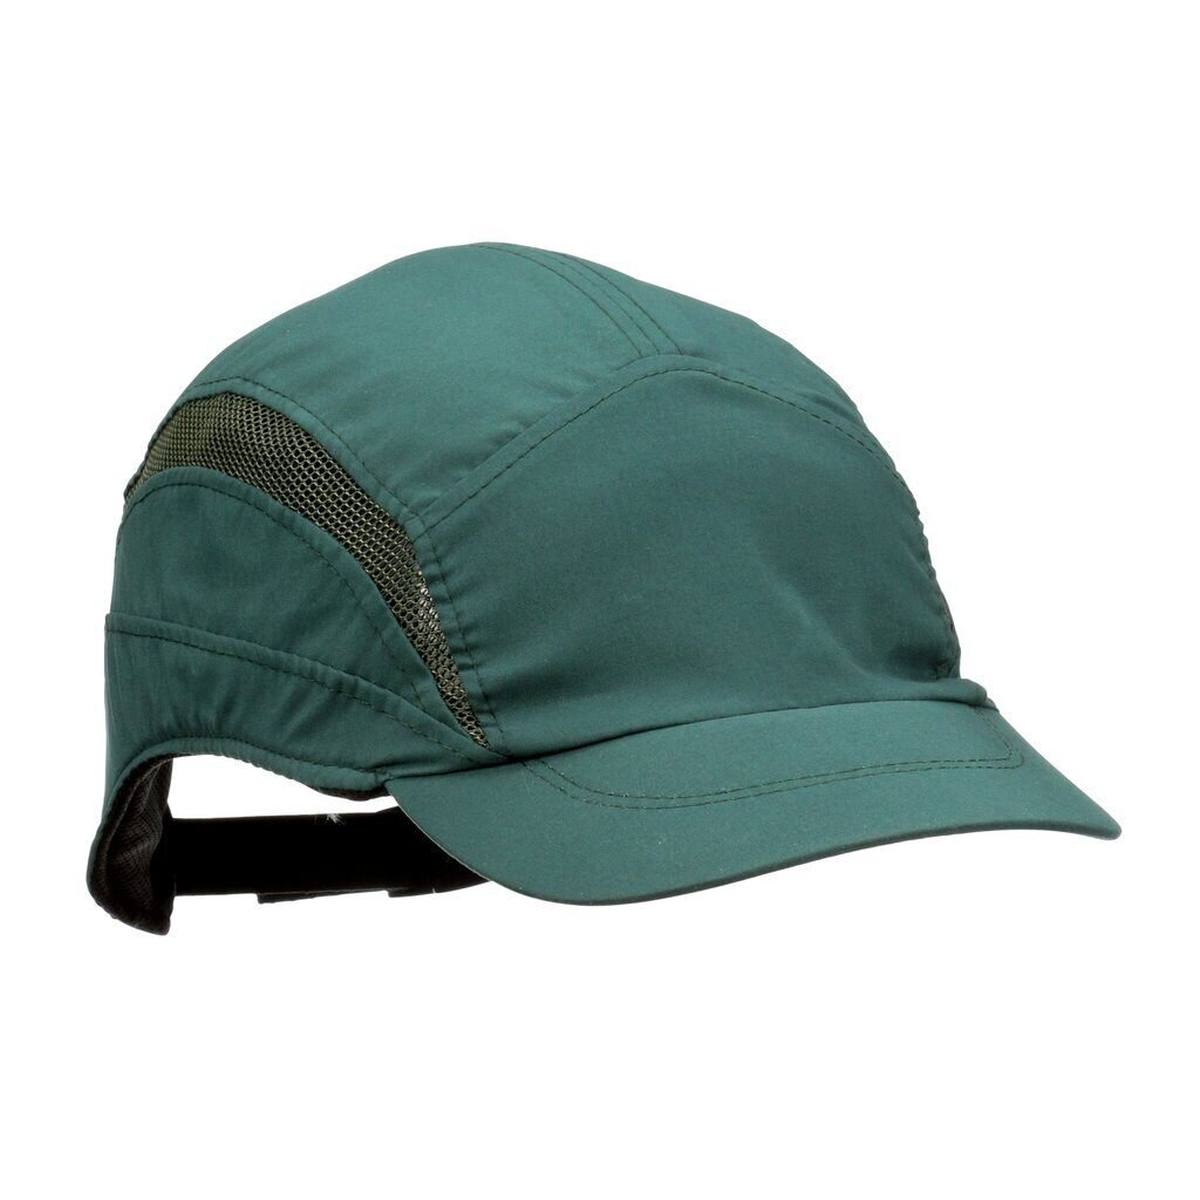 3M Scott First Base 3 Classic - berretto a botta in verde scuro - visiera accorciata 55 mm, EN812